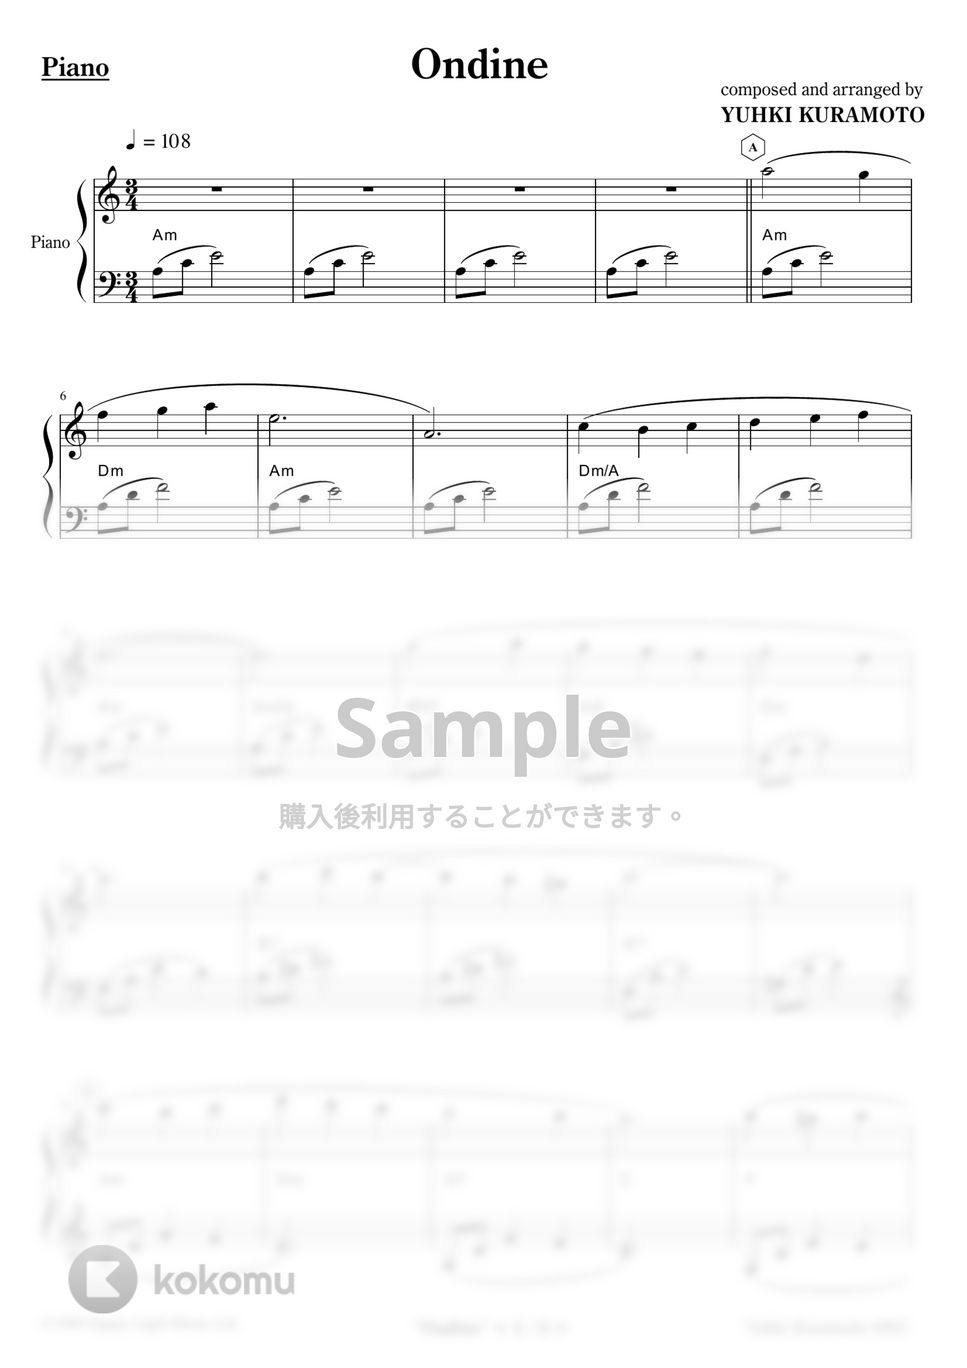 Yuhki Kuramoto - Ondine (Easy Ver.) by Yuhki Kuramoto